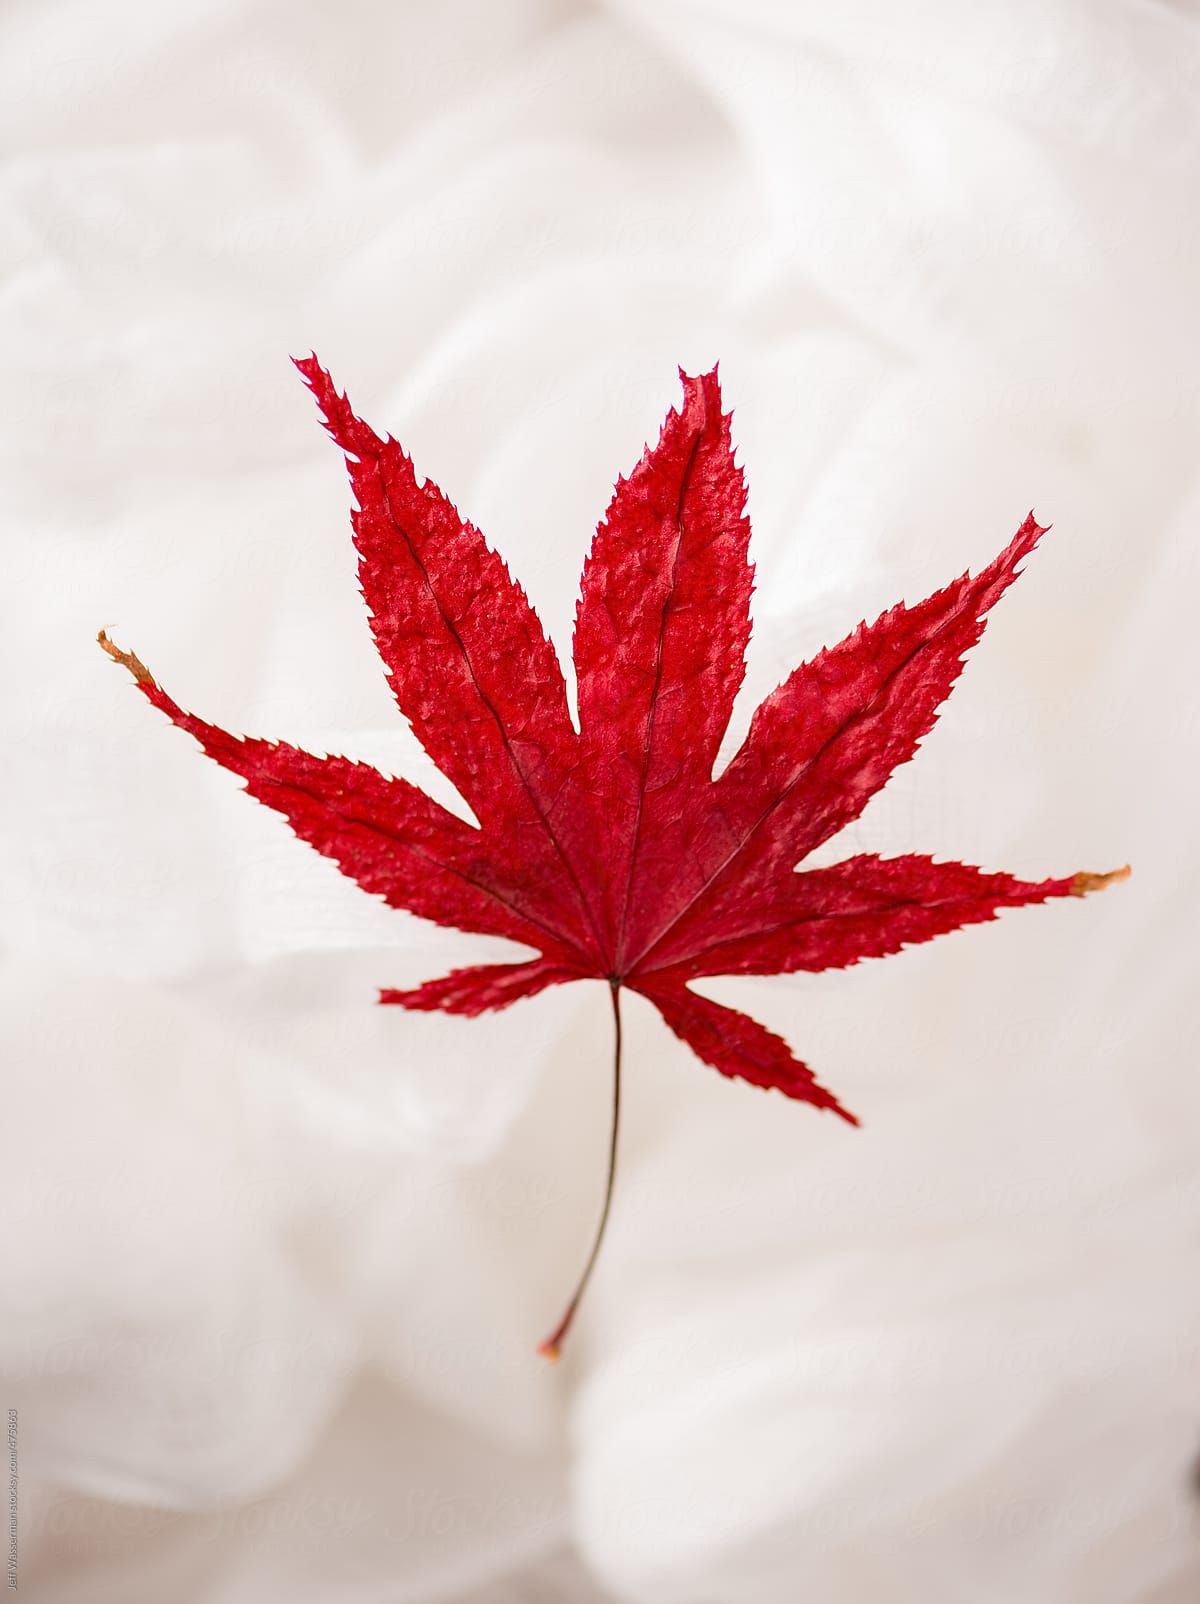 Dried Fall Japanese Maple Leaf by Jeff Wasserman